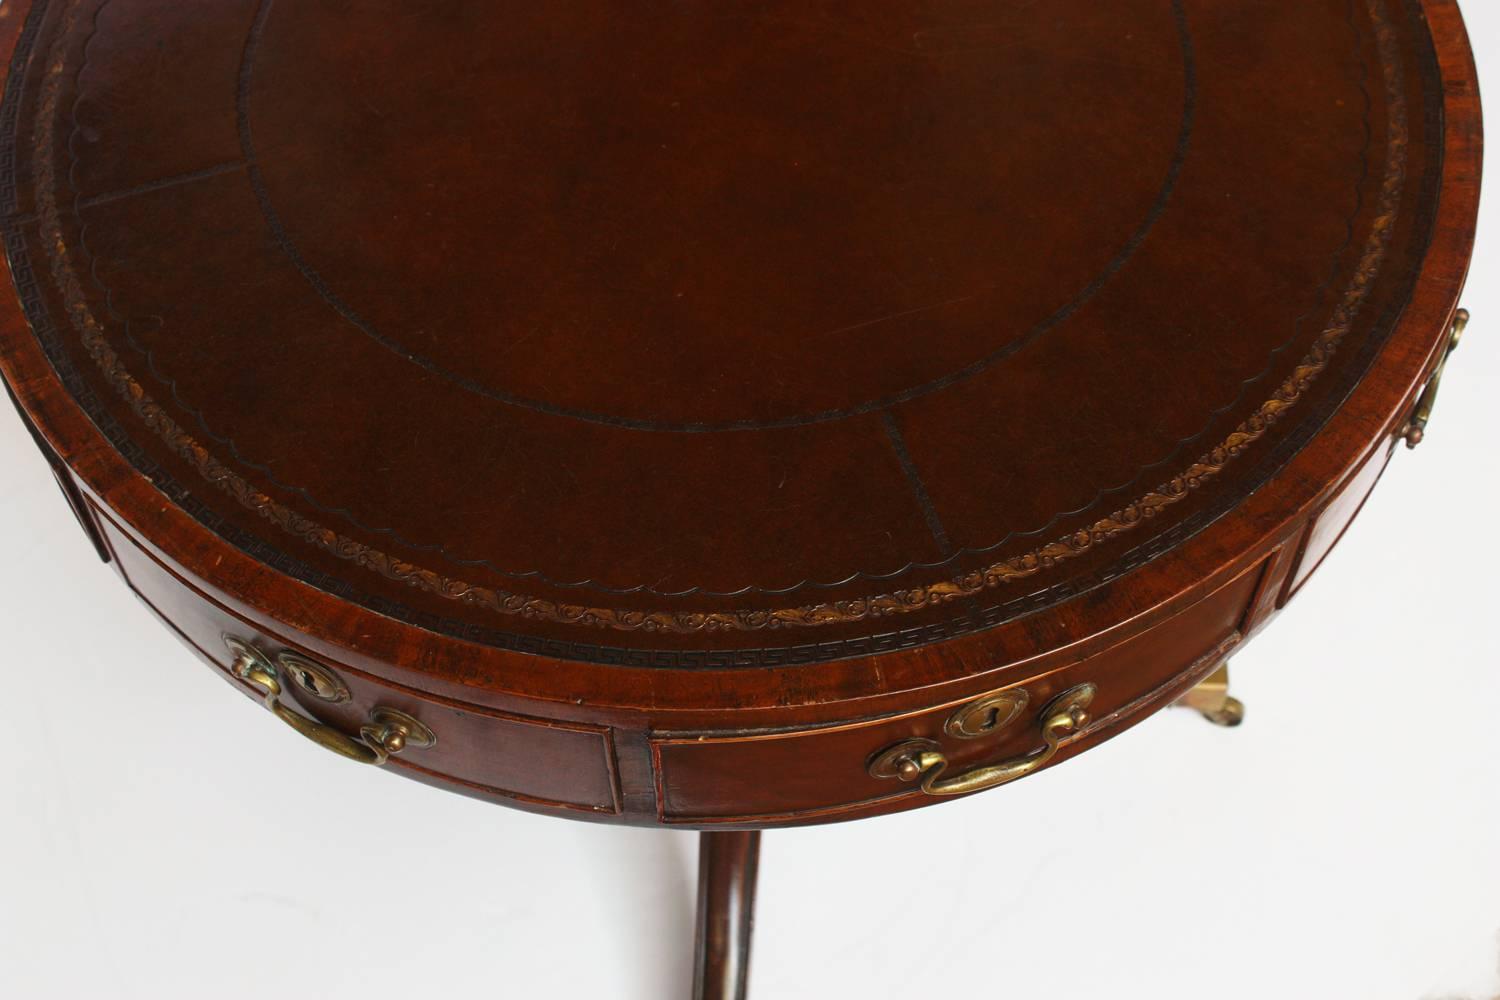 Leather 18th Century Diminutive George III Drum Table